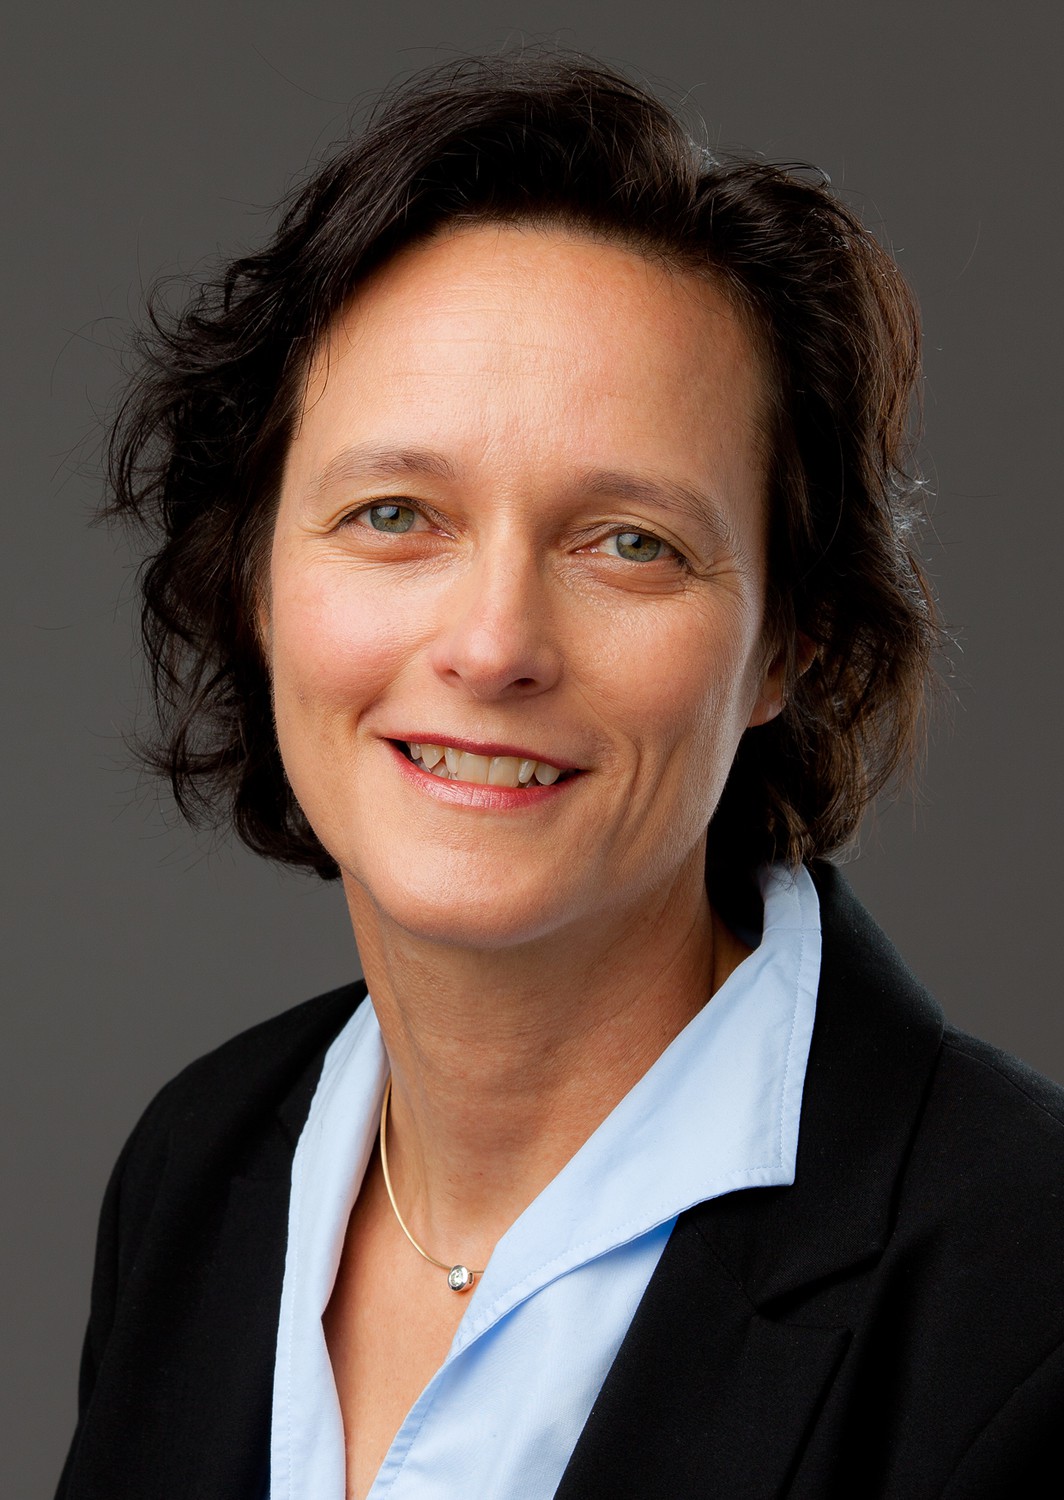 Prof. Iris Chaberny, Direktorin des Instituts für Hygiene, Krankenhaushygiene und Umweltmedizin am Universitätsklinikum Leipzig